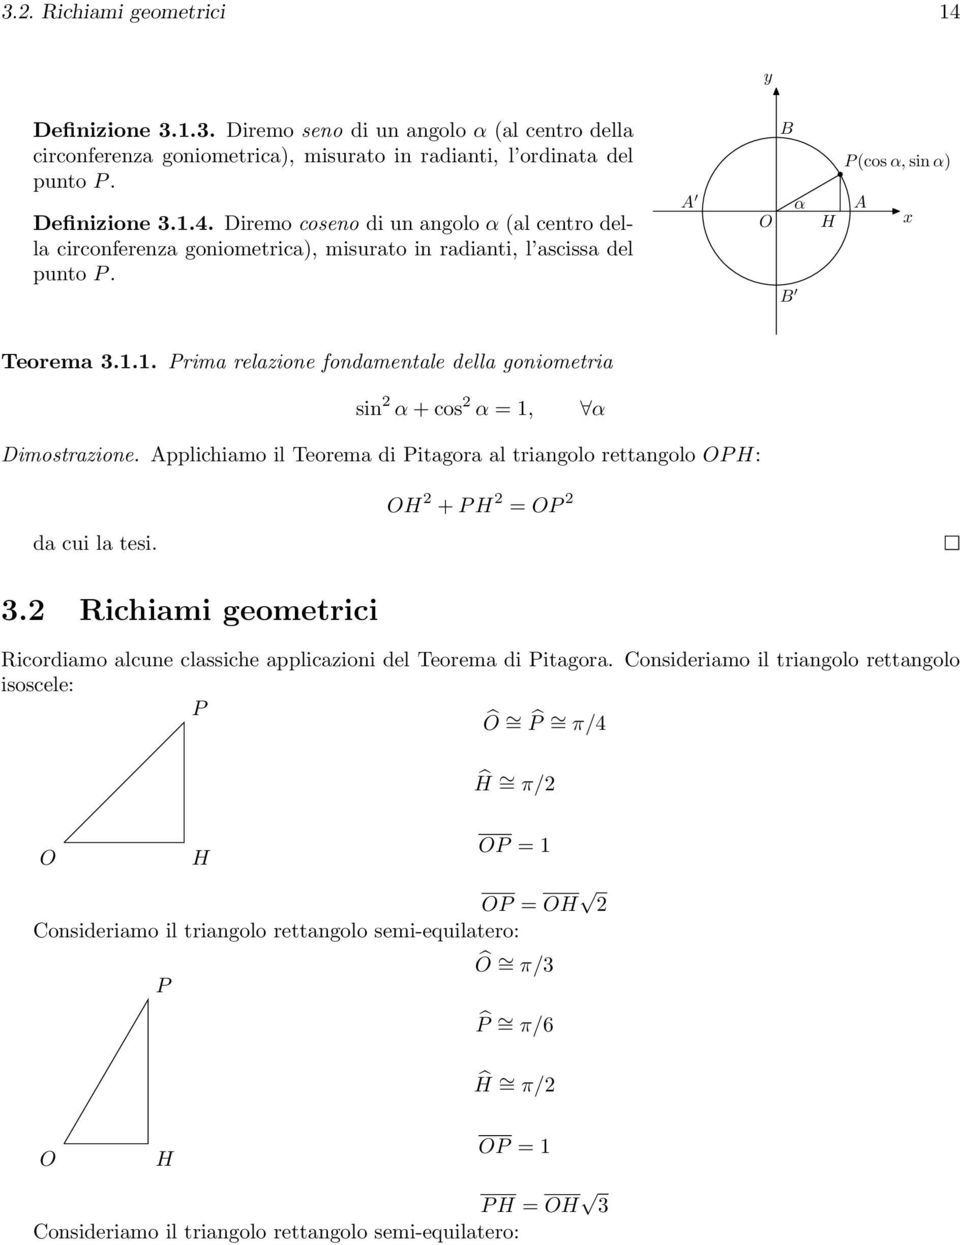 H + P H = P. Richiami geometrici Ricordiamo alcune classiche applicazioni del Teorema di Pitagora.